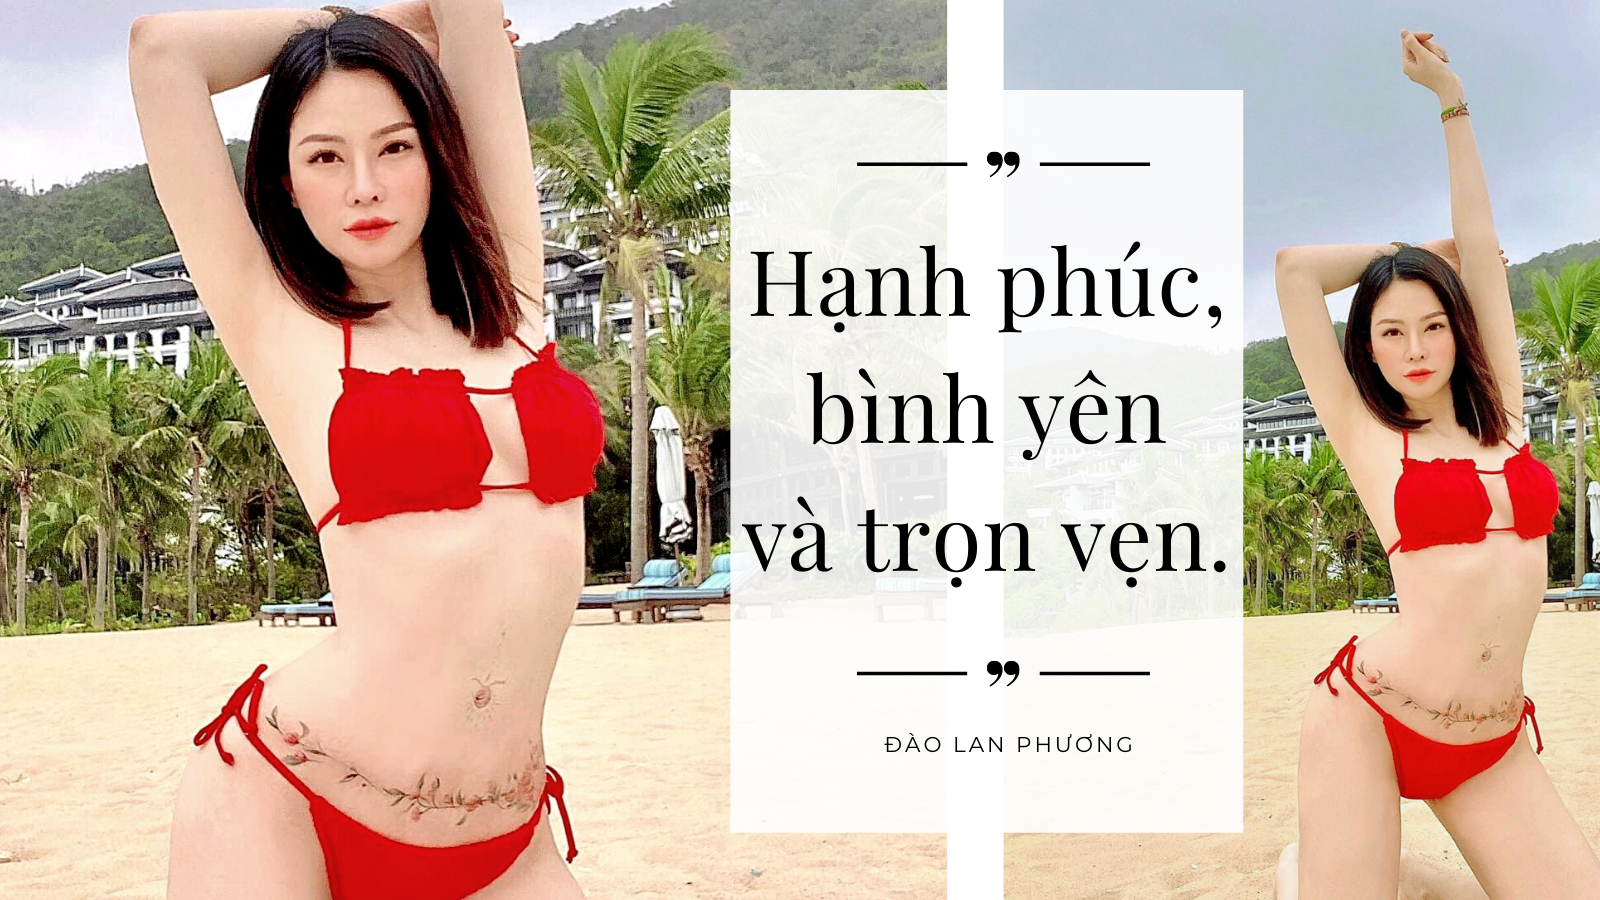 Lộ clip đi thi của siêu mẫu Bắc Ninh, dân mạng bình luận không ngớt - 1